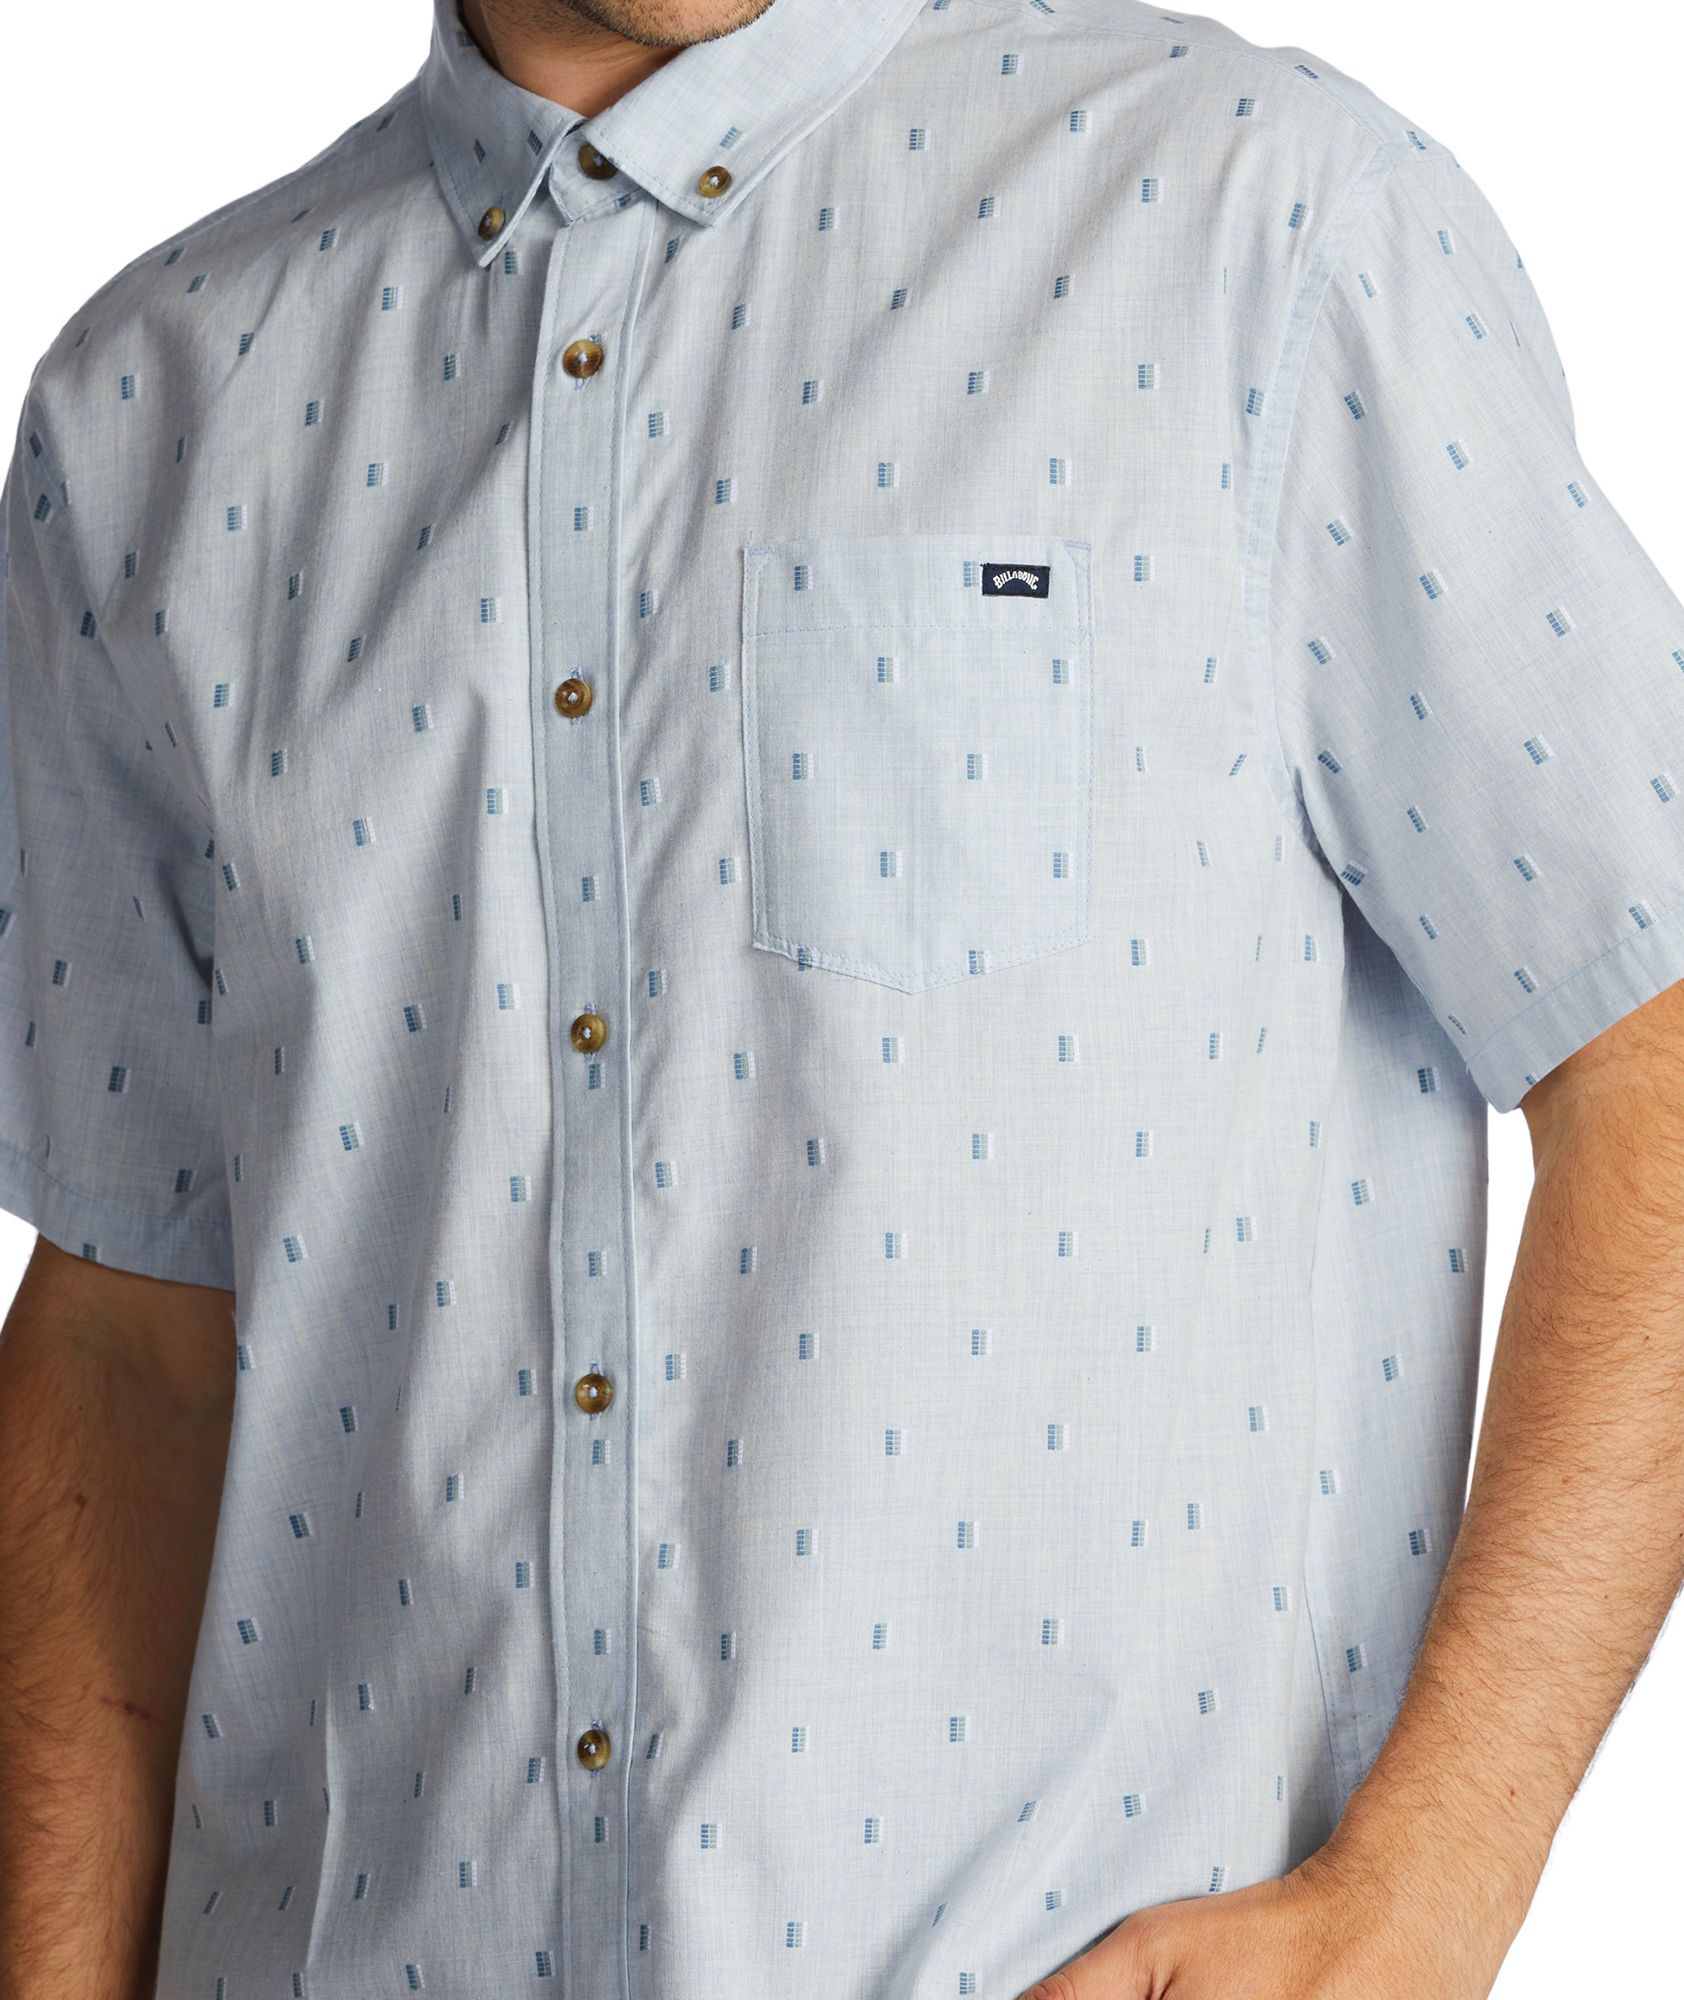 Billabong Men's All Day Jacquard Woven Button-Down Shirt